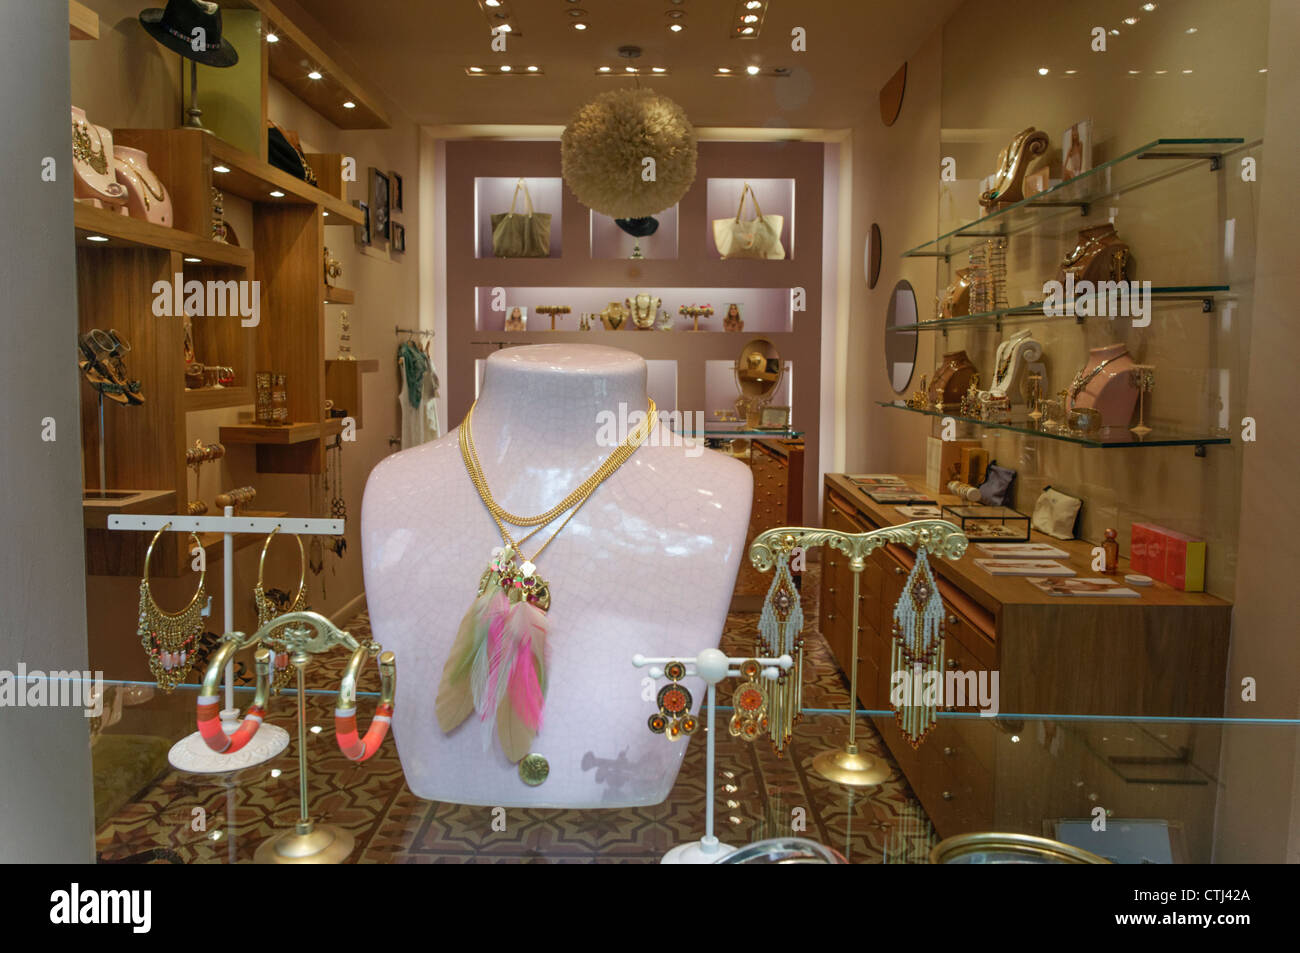 Gas Bijoux, French Jewelry boutique, West Village, New York Stock Photo -  Alamy